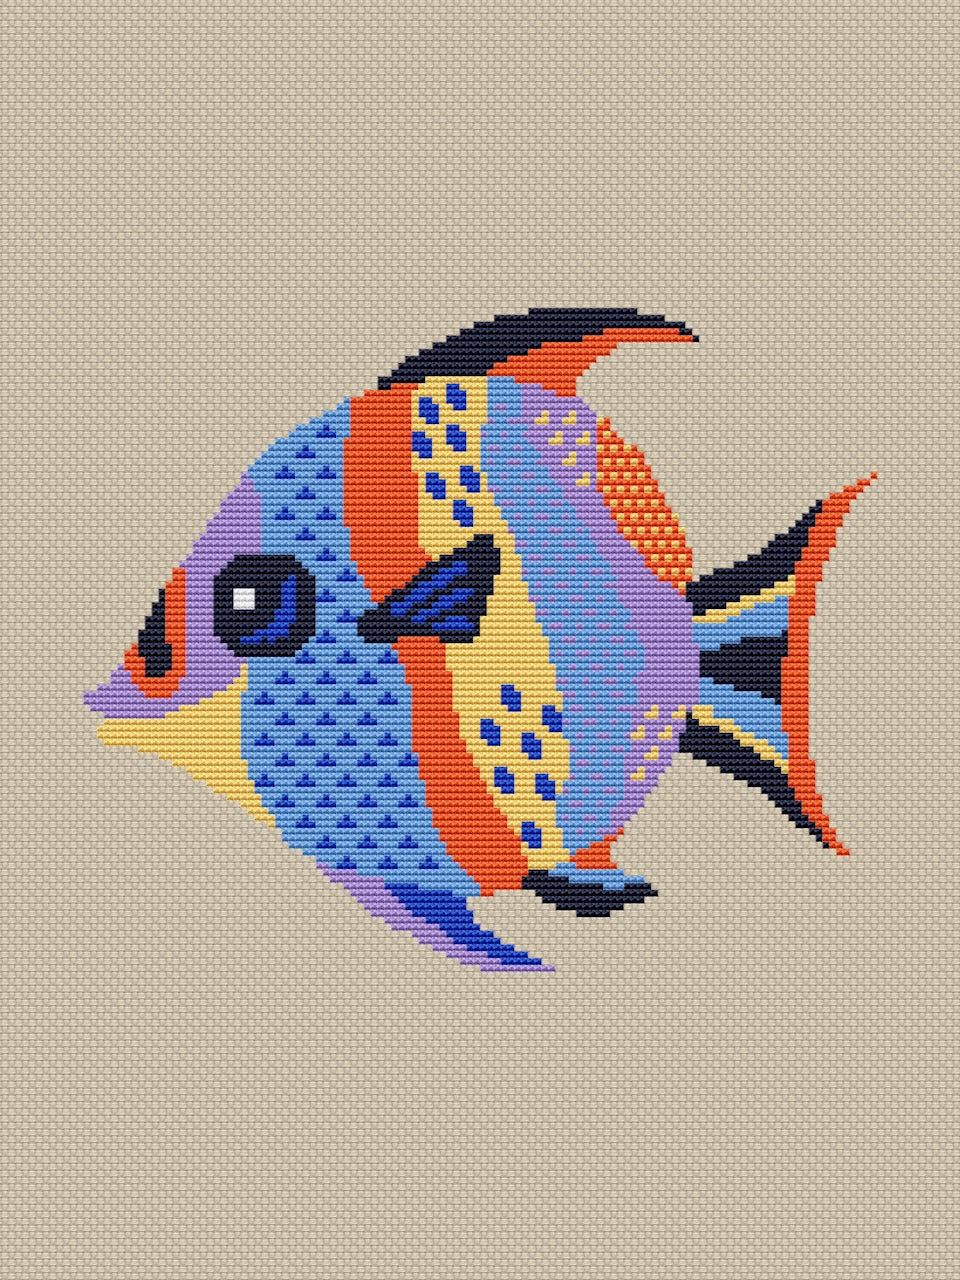 blue fish cross stitch pattern